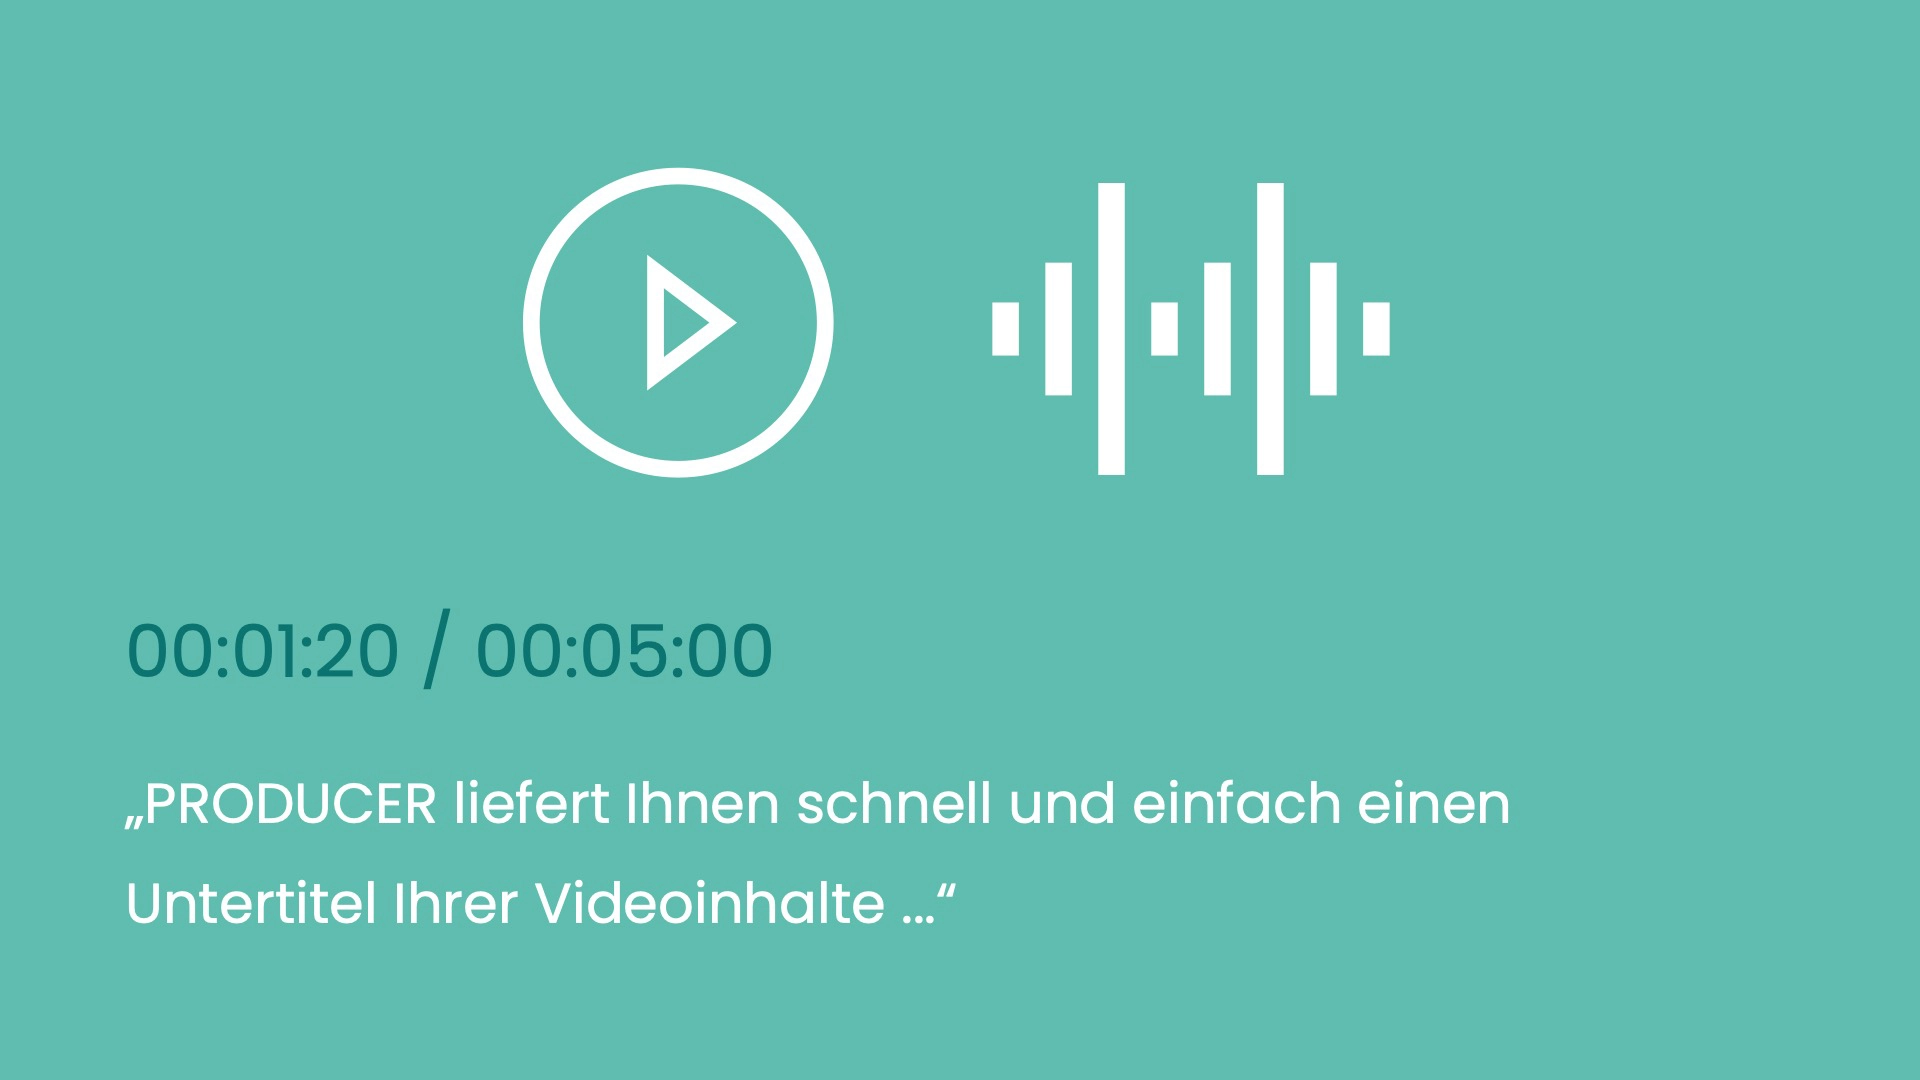 Soundwellen werden bei der automatischen Transkription in Text umgewandelt, beispielhafte Darstellung